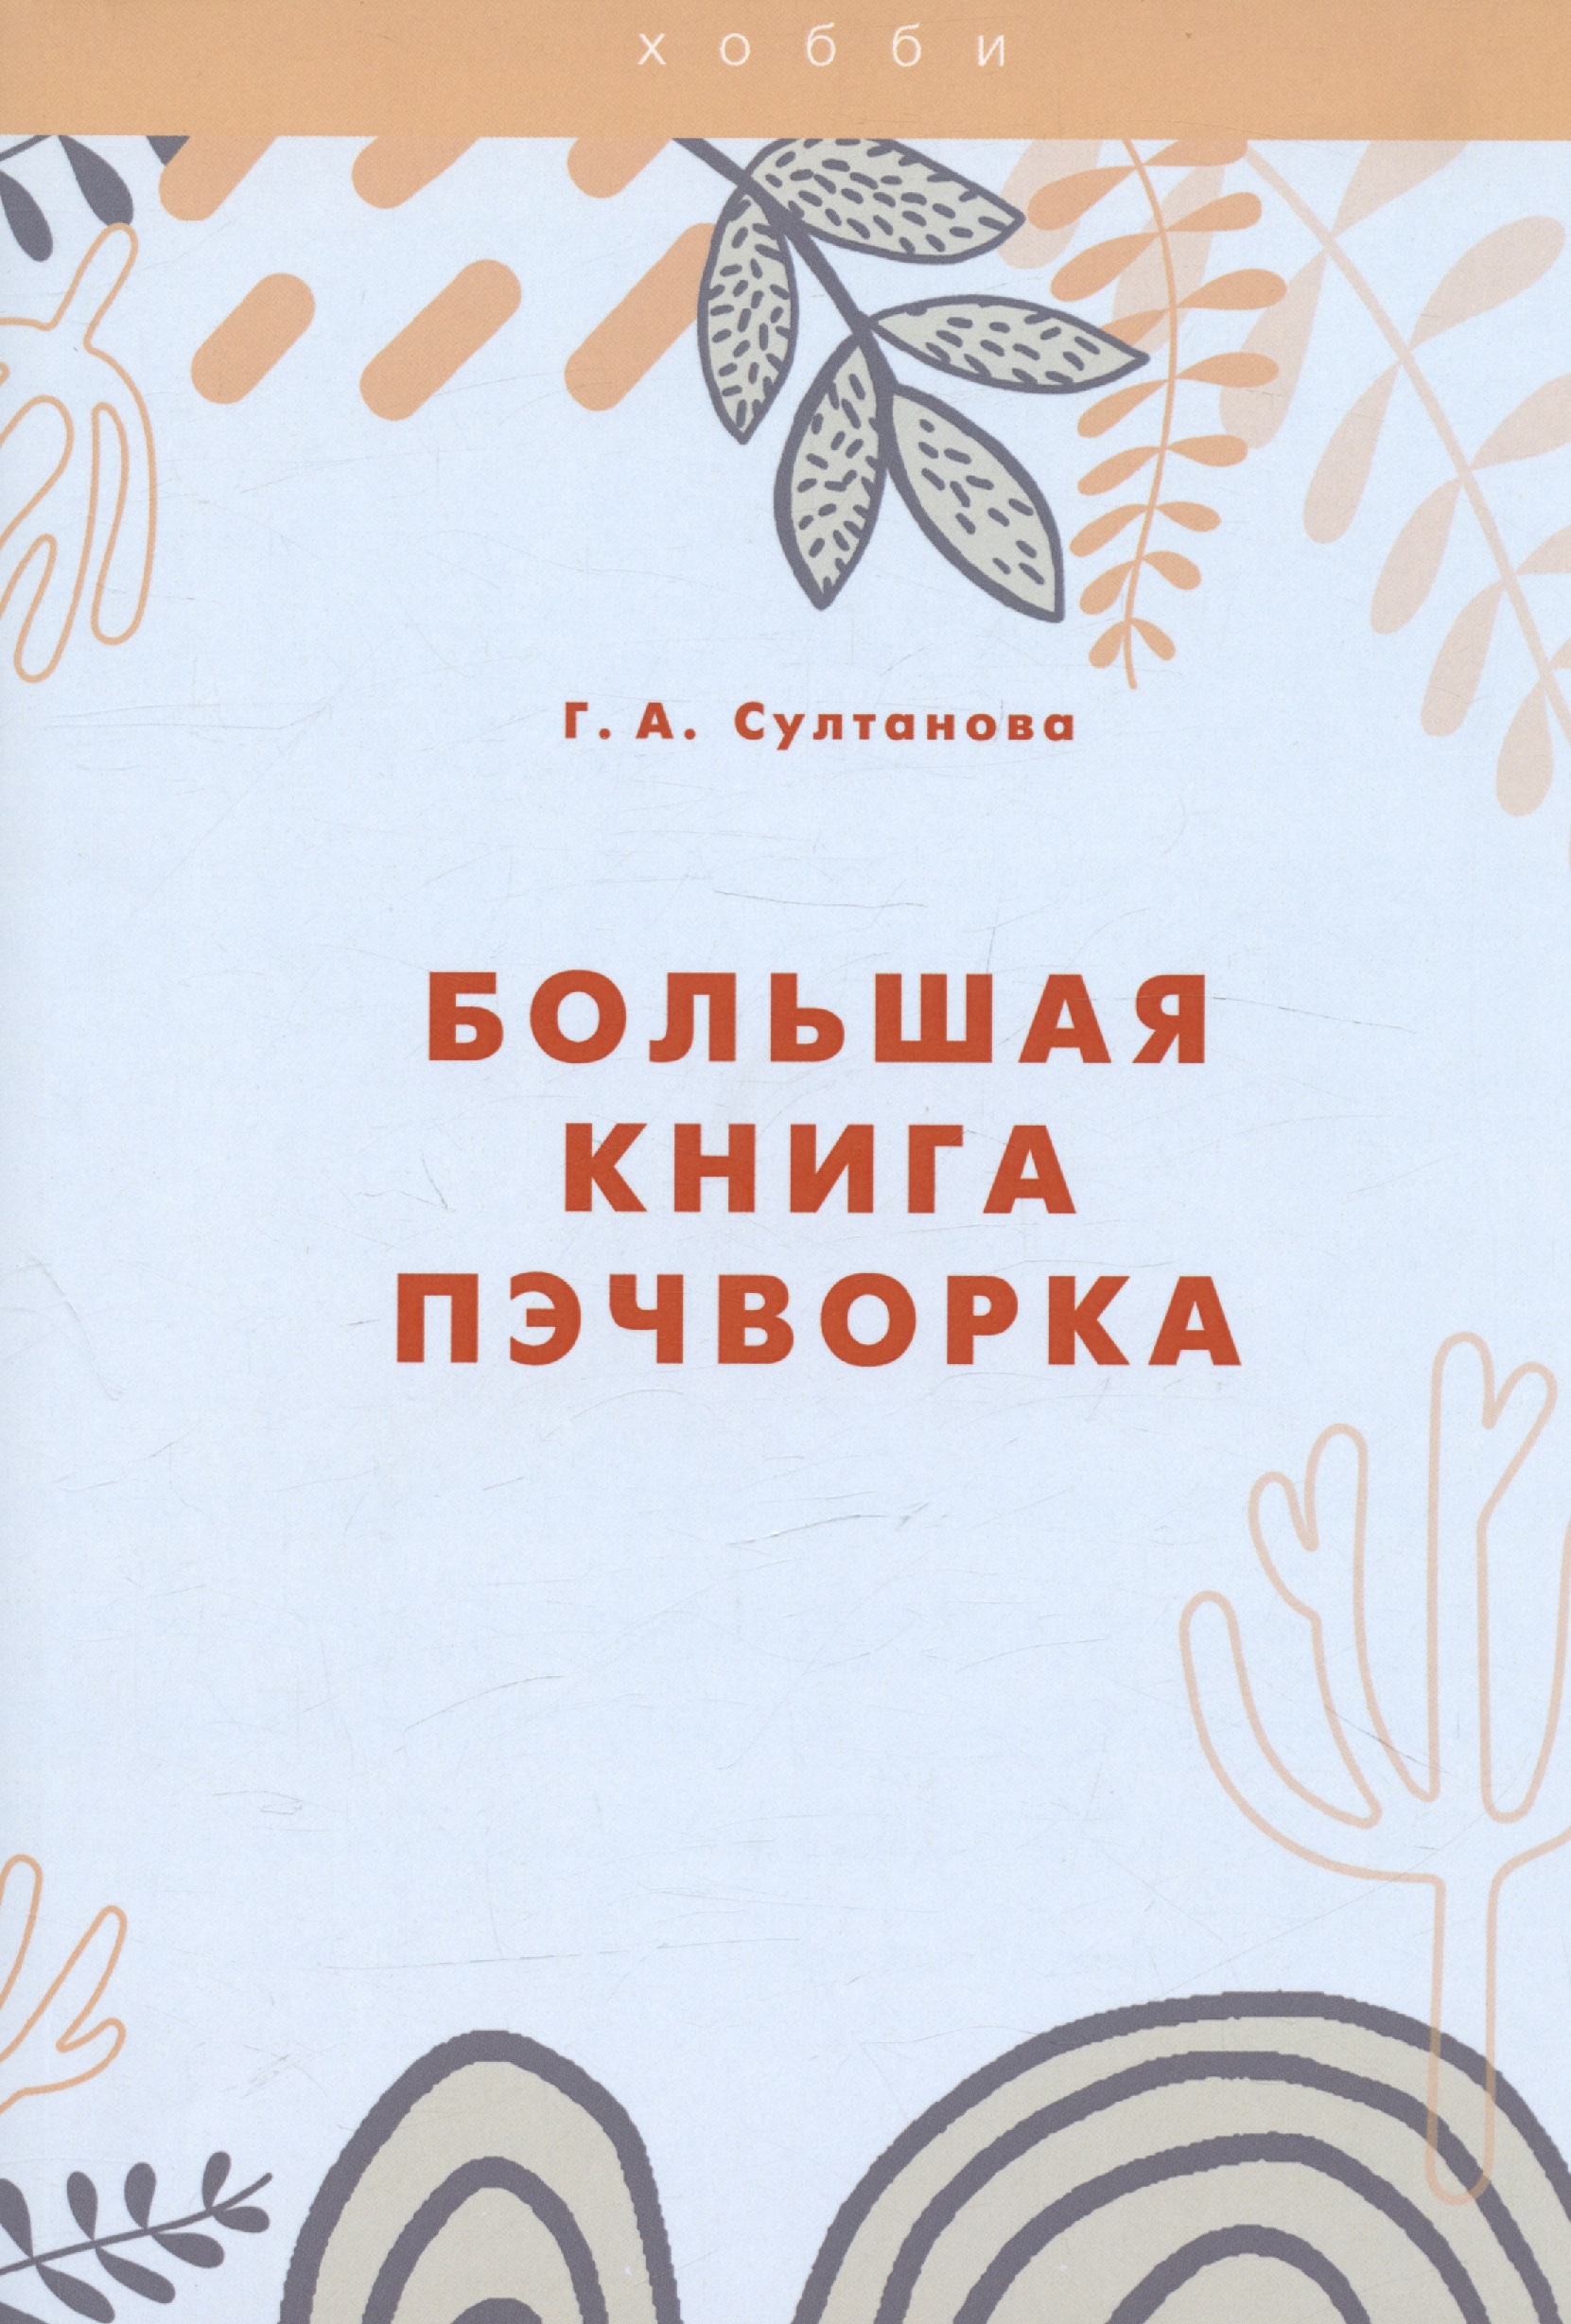 Султанова Г. А. Большая книга пэчворка пэчворк изделия и одежда из лоскутков